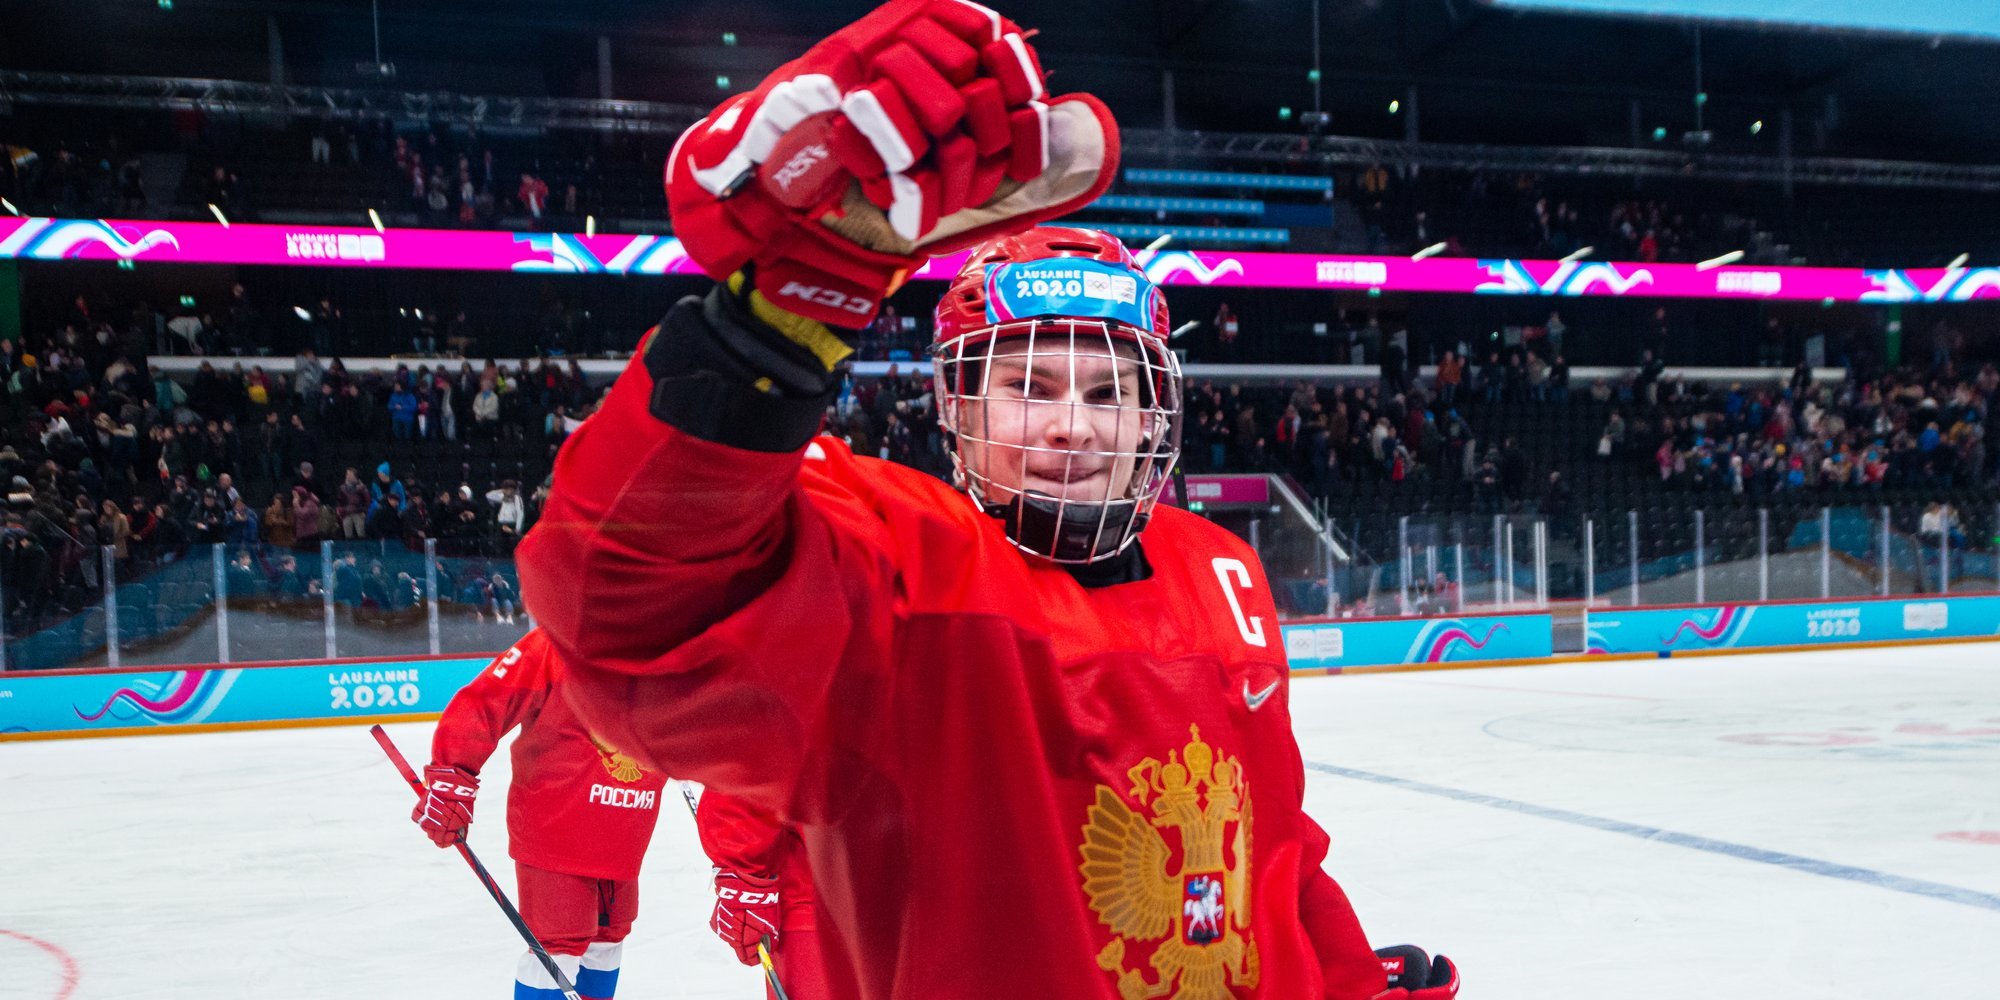 18-летний российский хоккеист борется со страшной болезнью. А Ваню уже ждут в НХЛ!